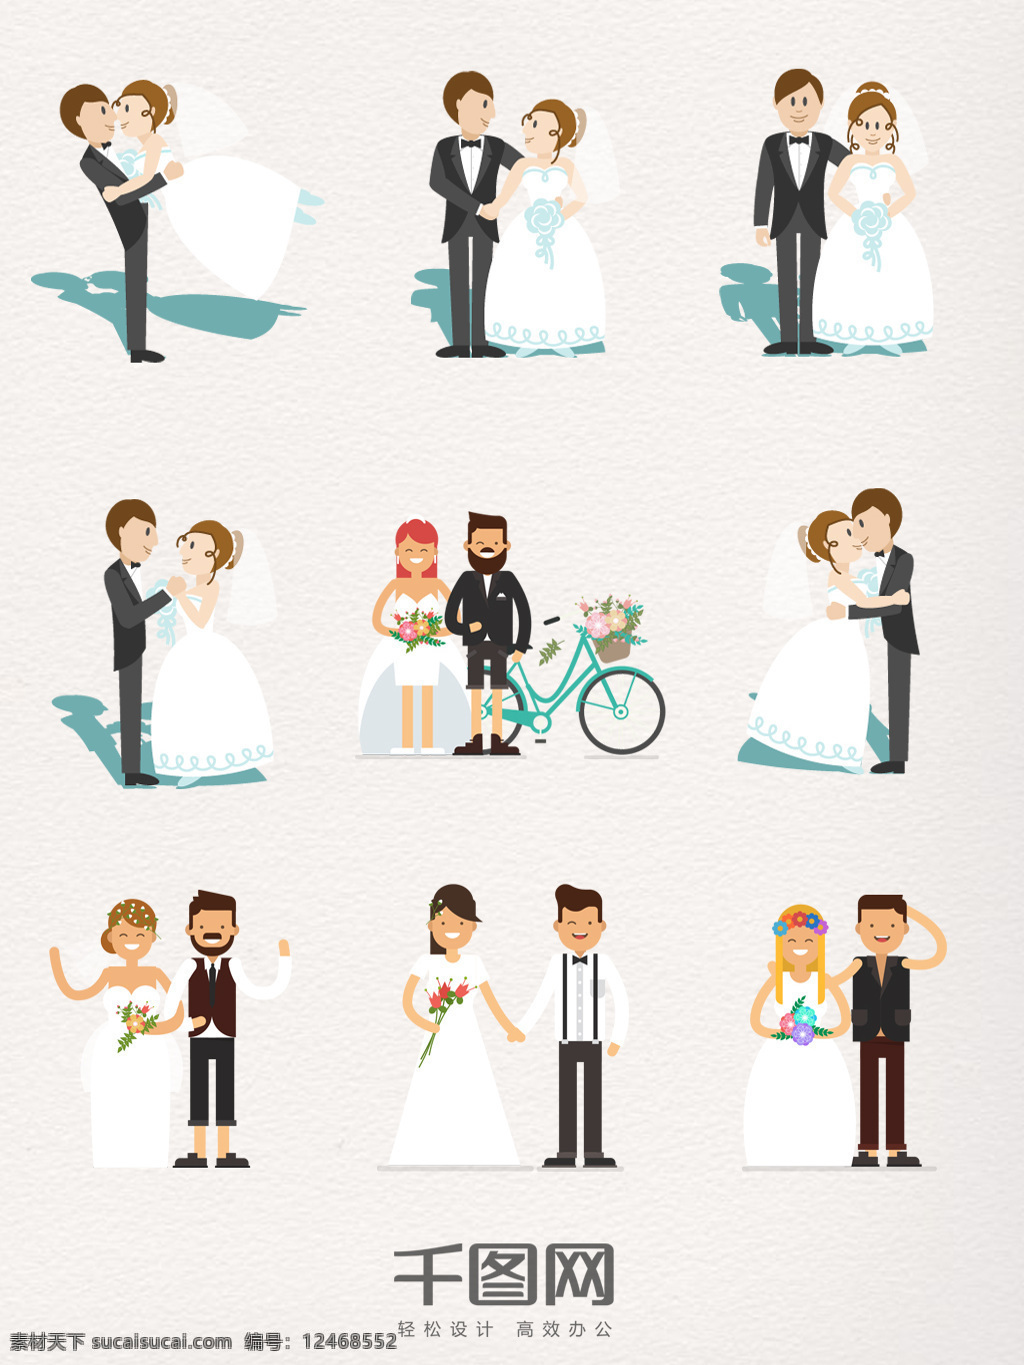 组 新郎 新娘 图案 元素 手绘 婚纱 西装 卡通 结婚 婚礼 插画